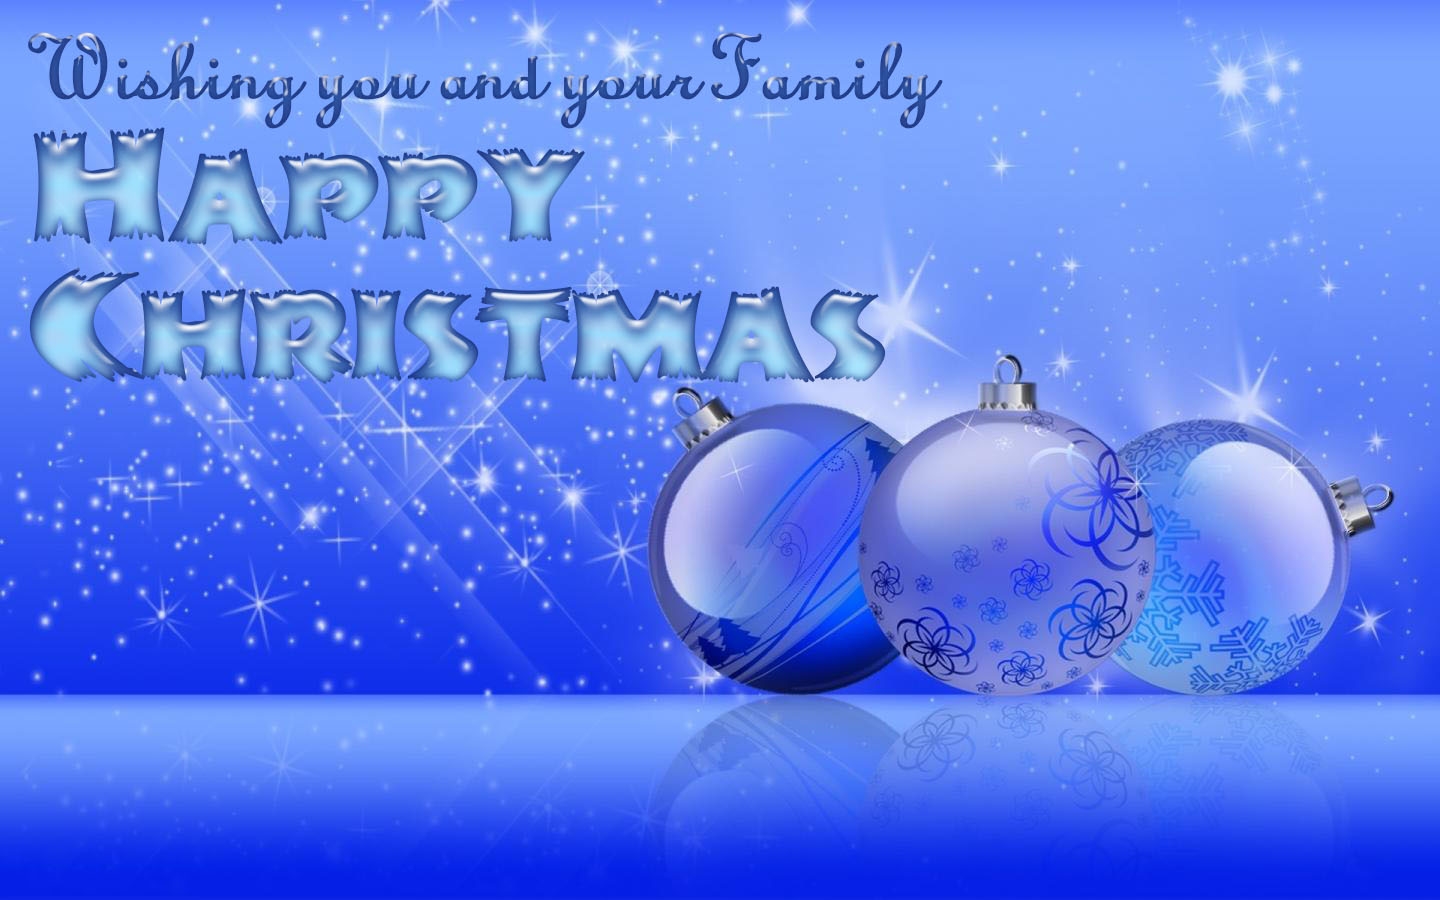 wallpaper proslut: Family Christmas Greetings e Cards Online.